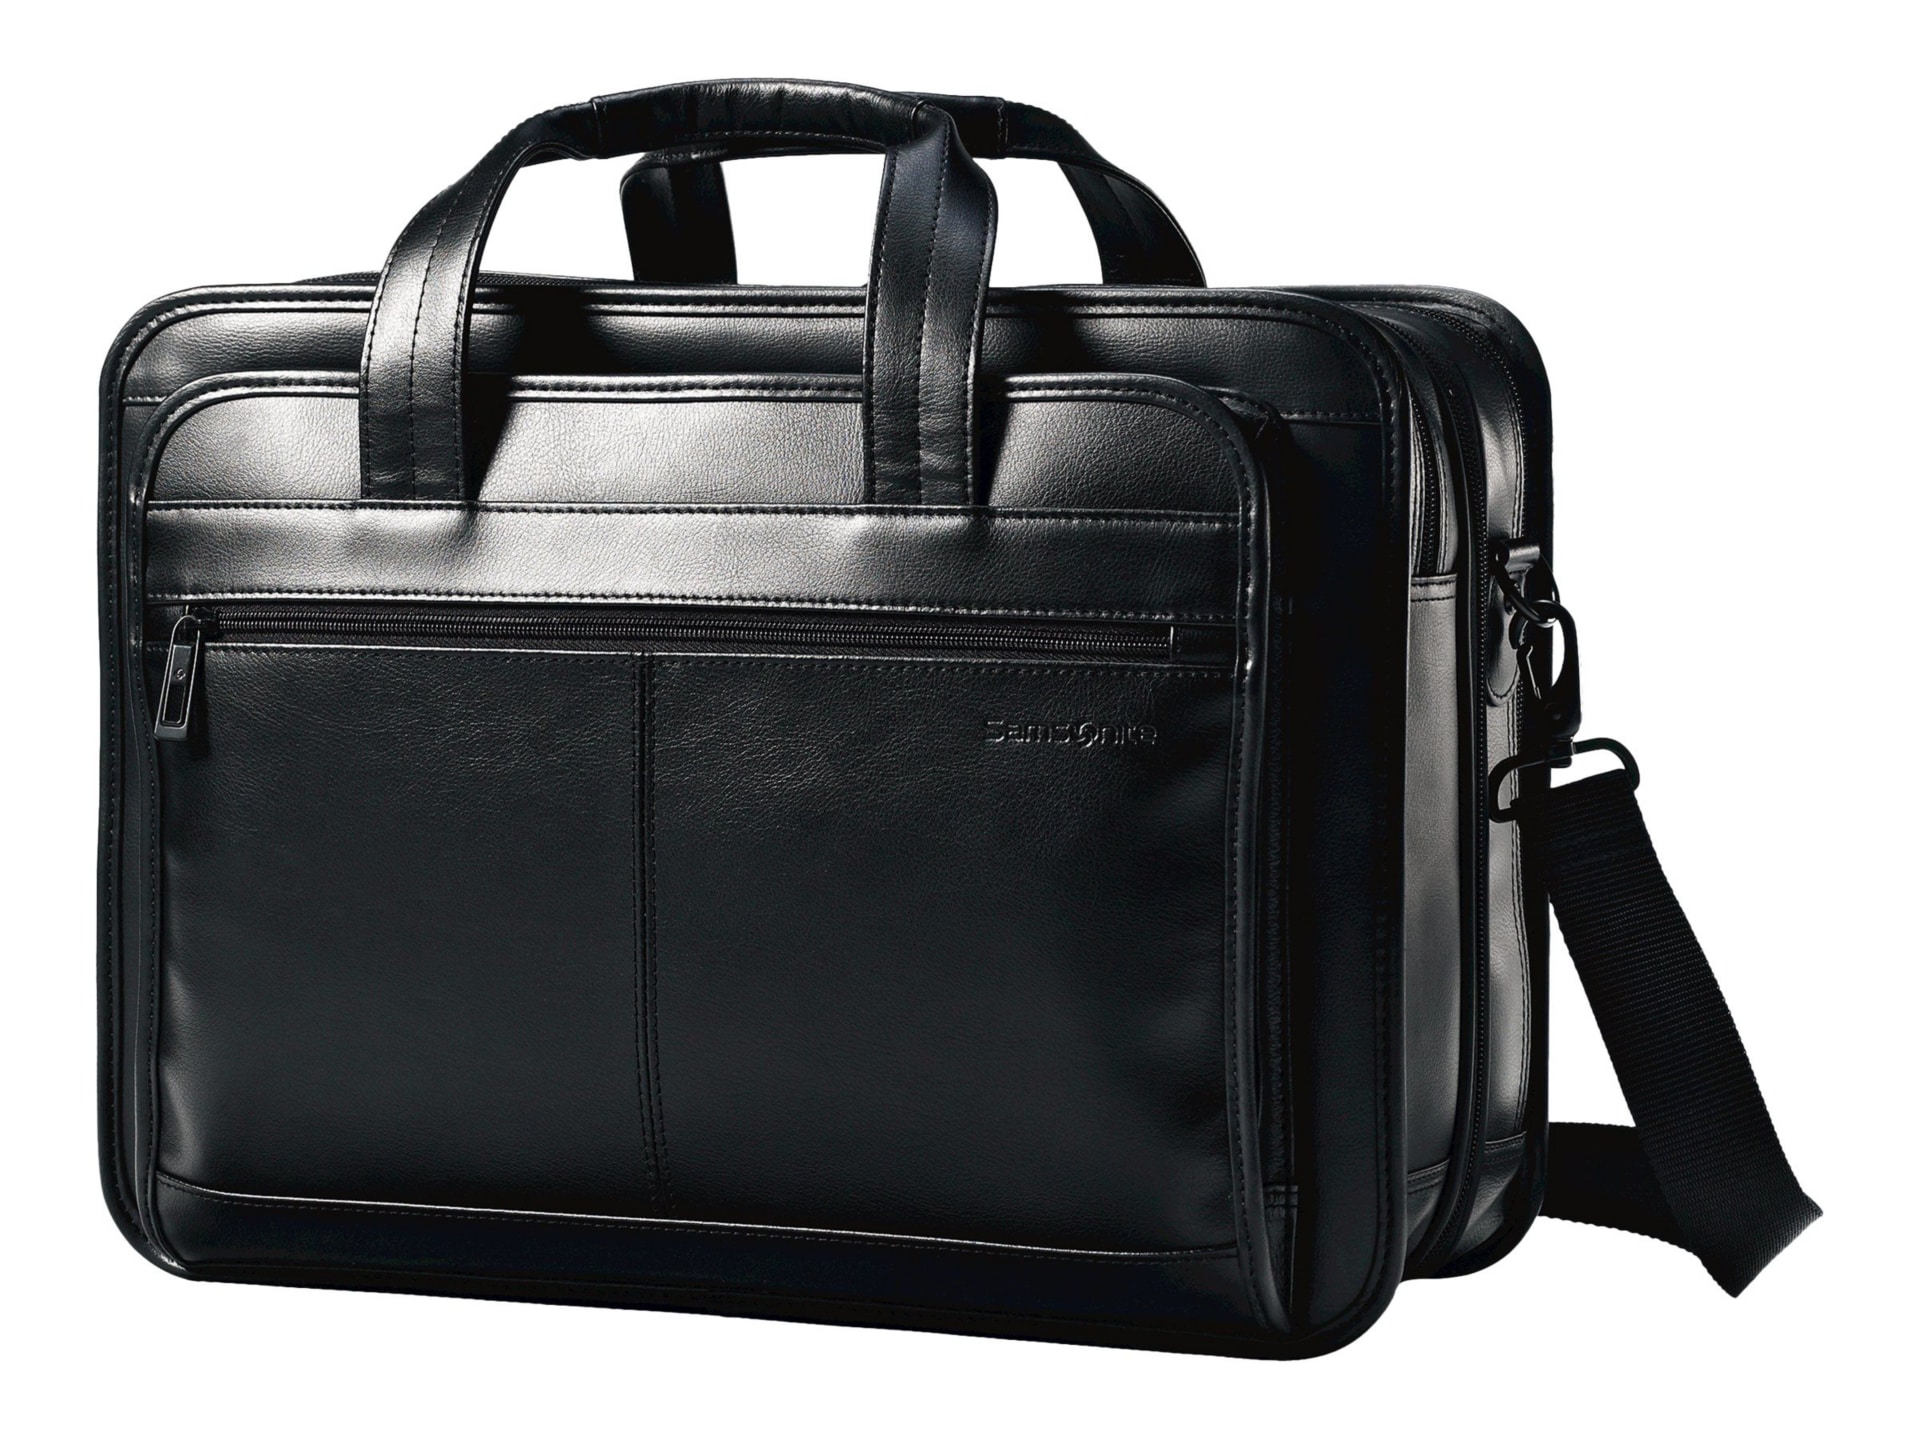 Franklin Covey Black Leather Work Laptop Bag Briefcase Shoulder Tote  Organizer